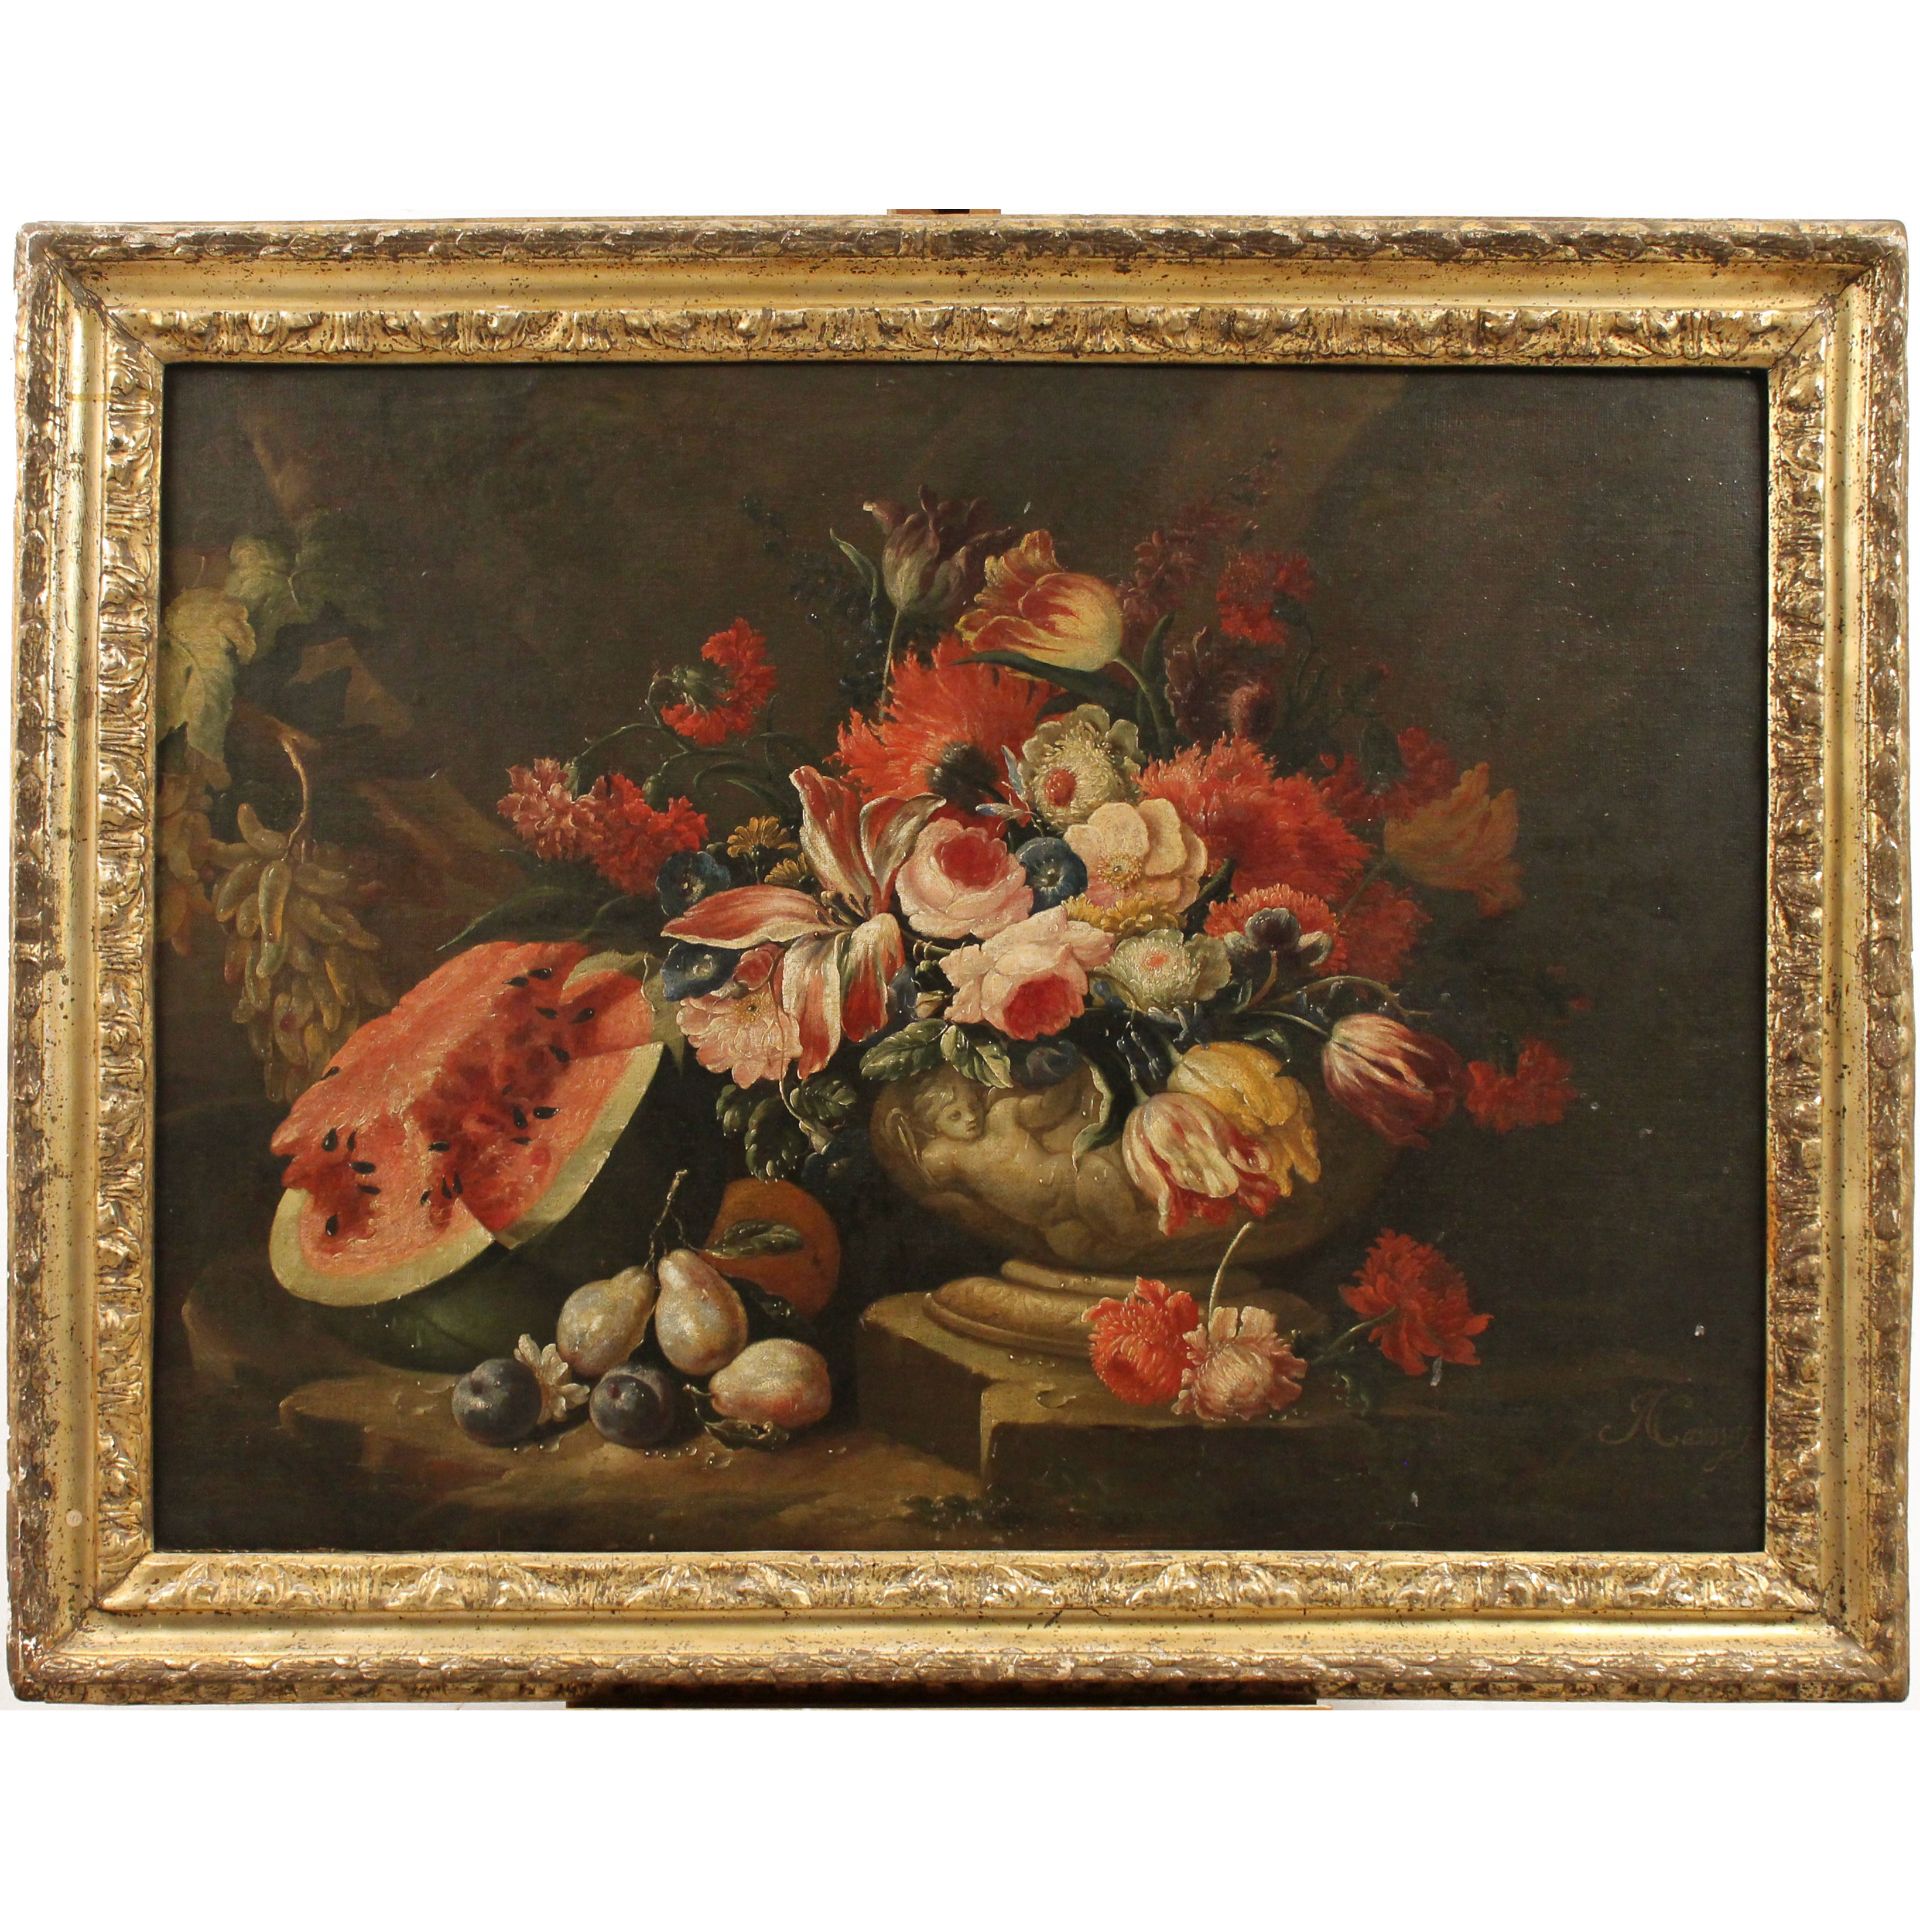 Nicola Casissa (1680/1731) "Natura morta di fiori e frutta" - "Still life of flowers and fruit"